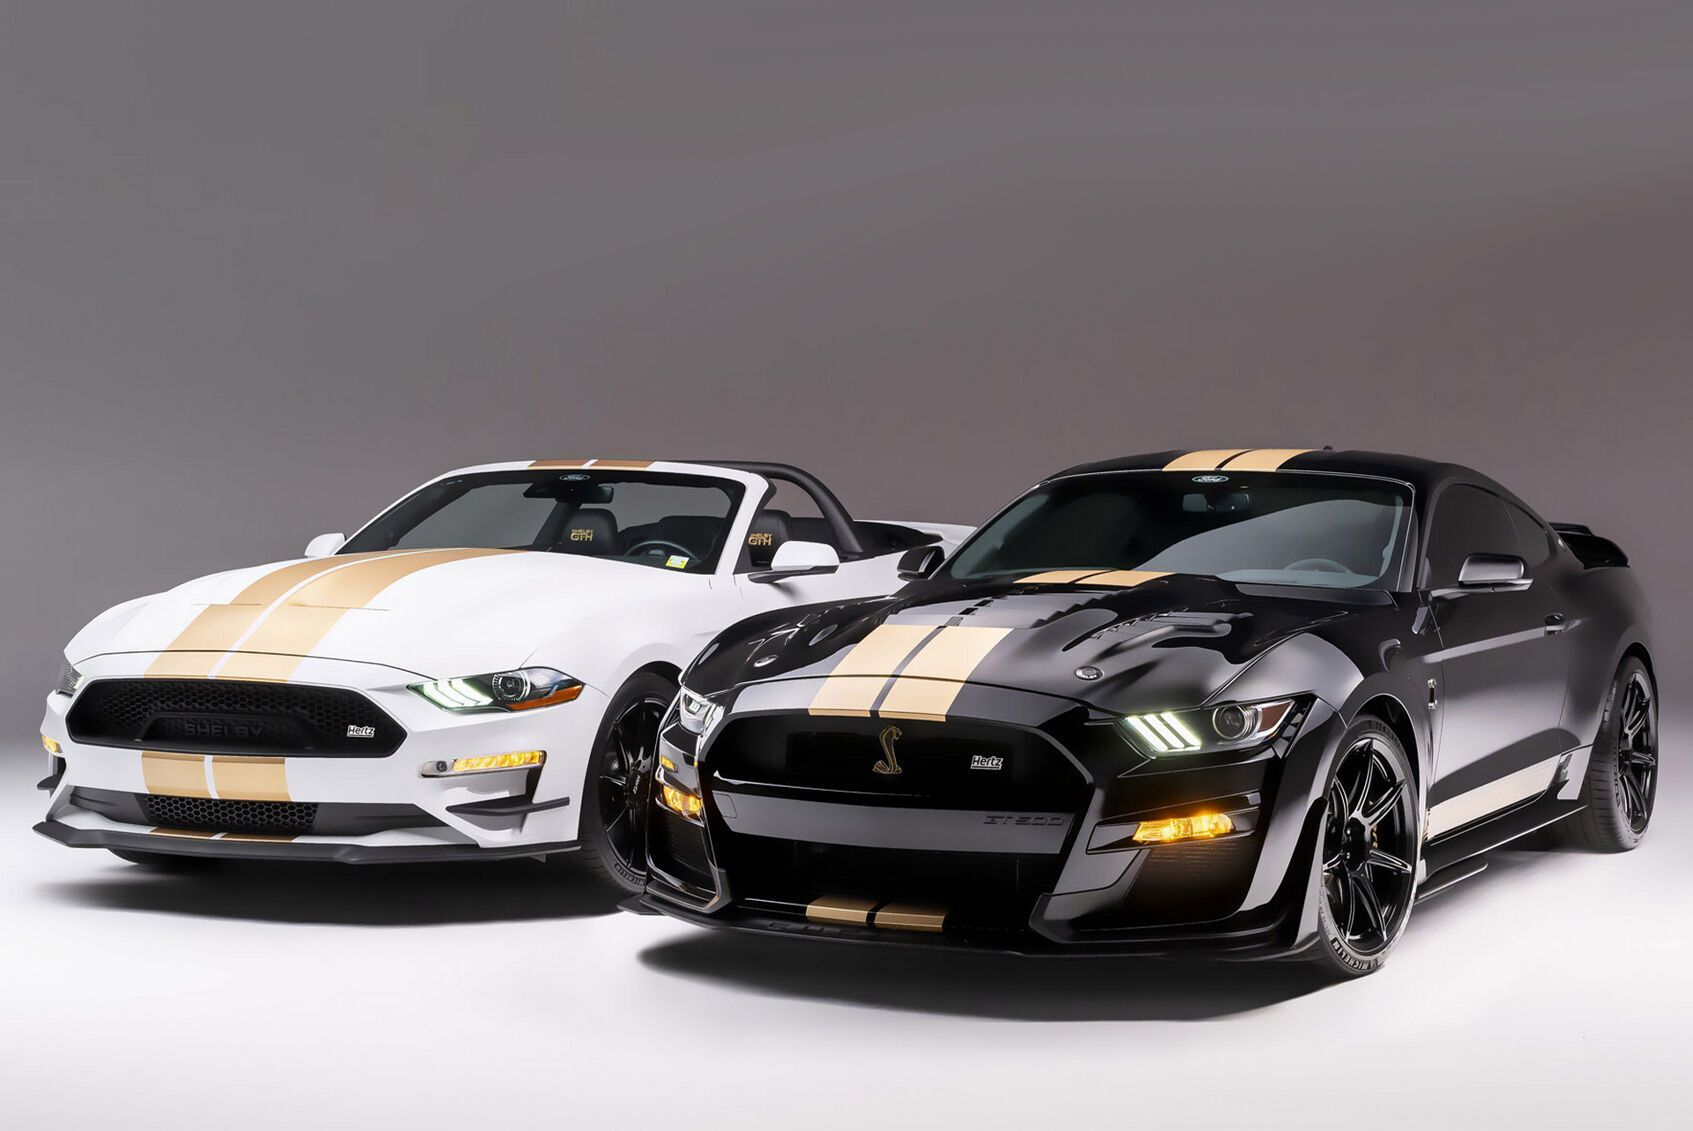 Компанія Hertz пропонує своїм клієнтам нові купе та кабріолети Ford Mustang. Машини підготовлені в особливій фірмовій "лівреї" компанією Shelby American